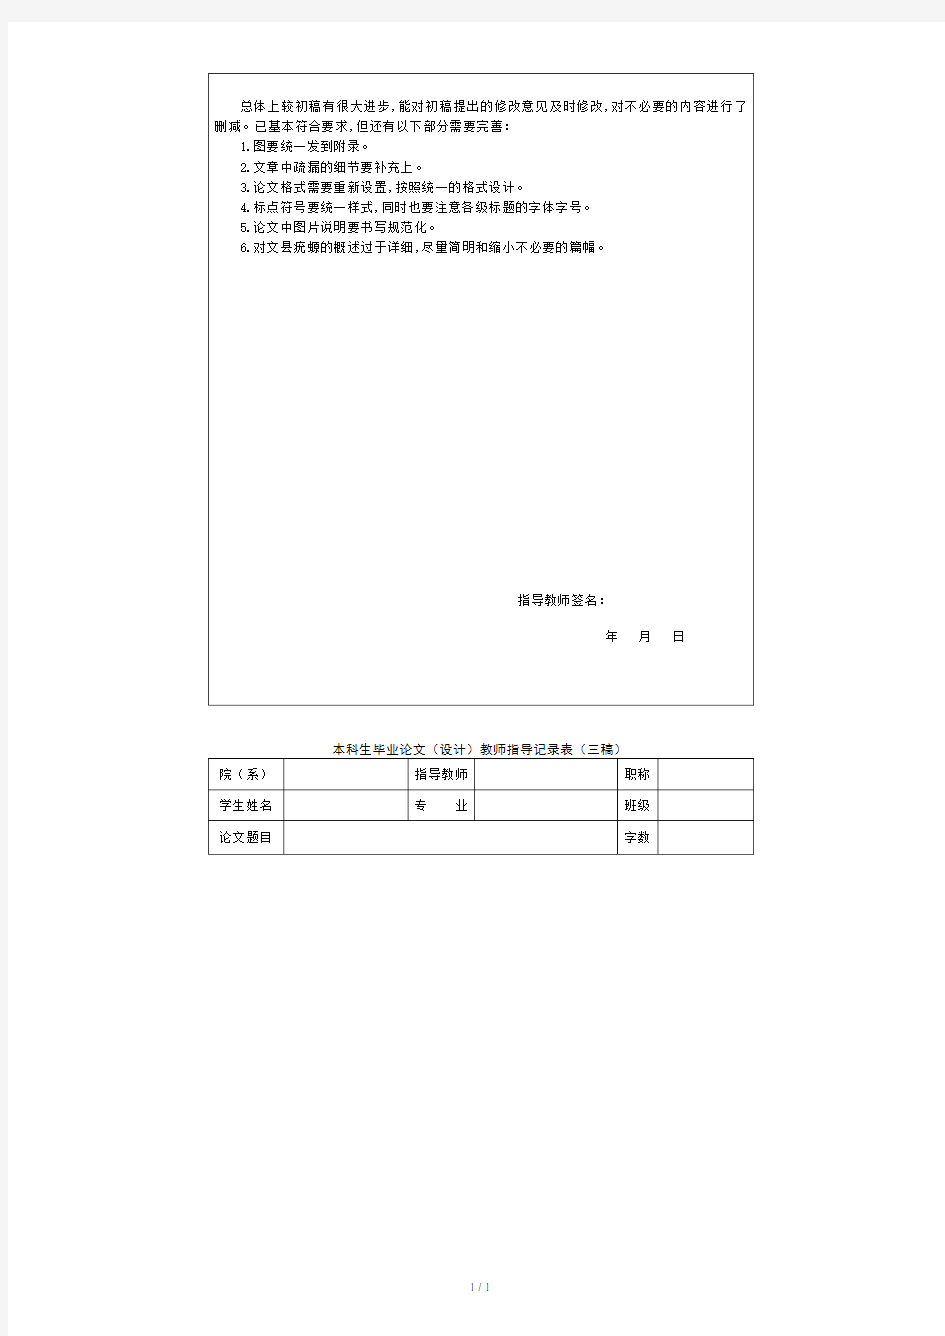 王威毕业论文指导意见表(初稿、二稿、三稿、定稿).doc